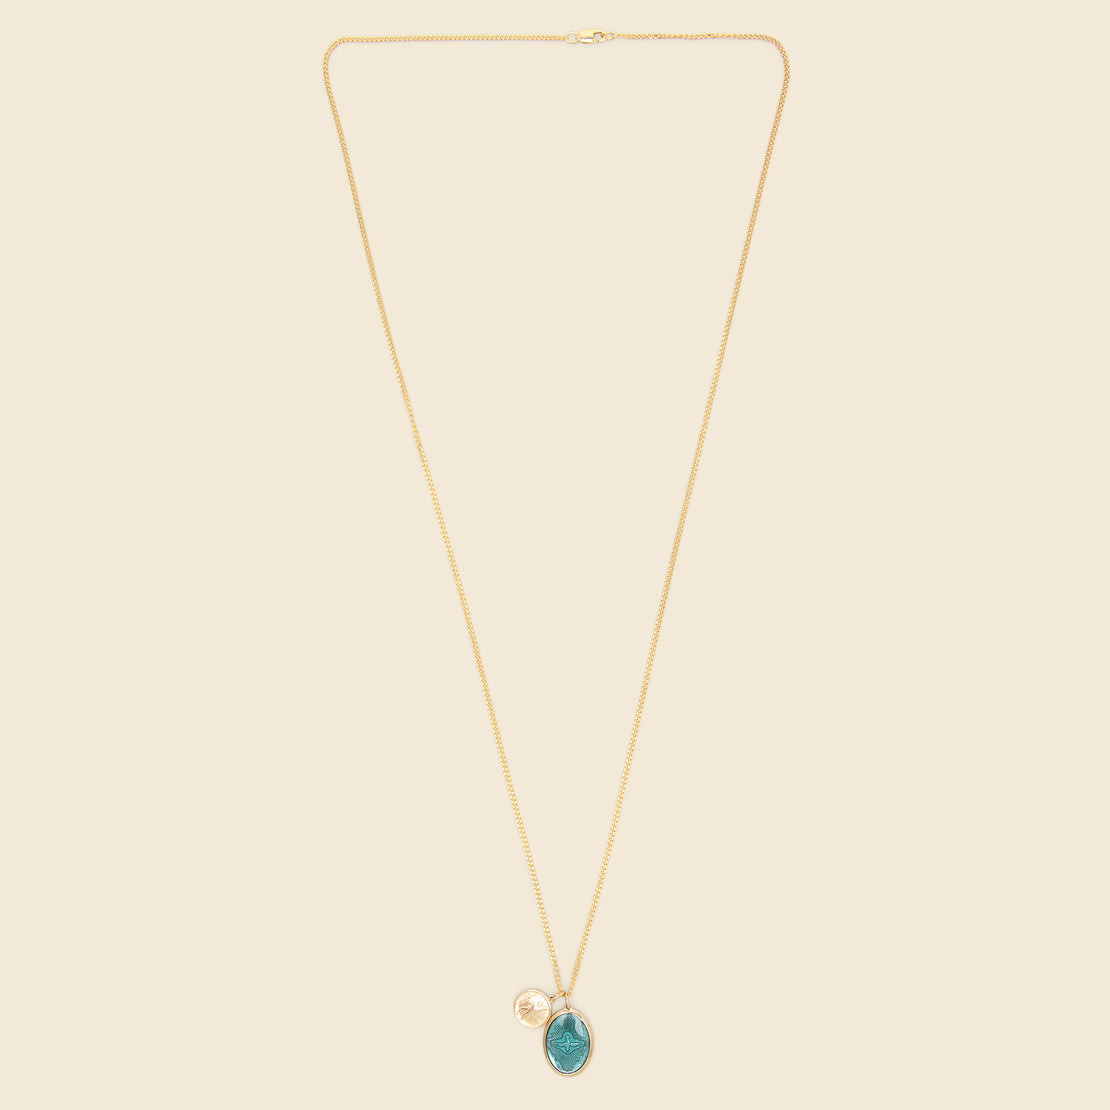 Mini Dove Pendant Necklace - Teal Enamel/Gold Vermeil - Miansai - STAG Provisions - Accessories - Necklaces